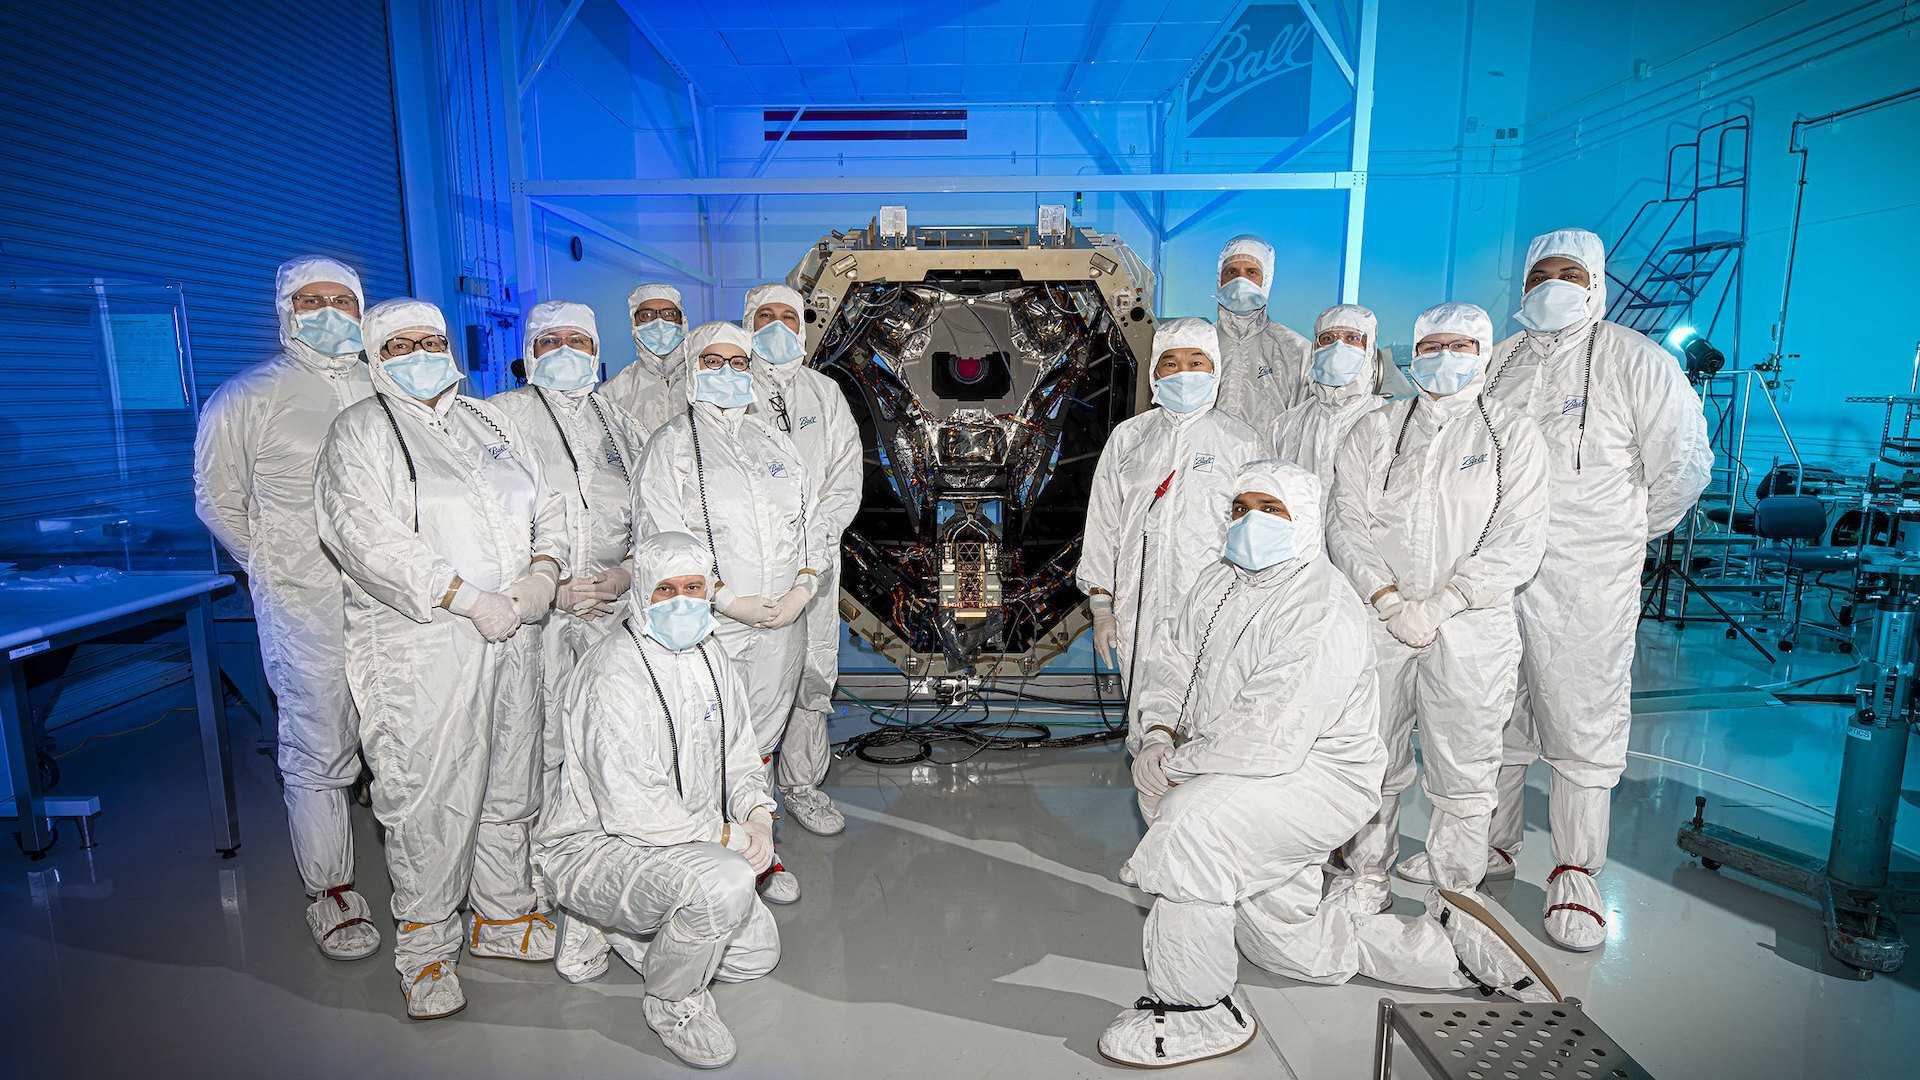 【特集】NASAの新しい宇宙望遠鏡「Nancy Grace Roman Space Telescope」が打ち上げ準備中